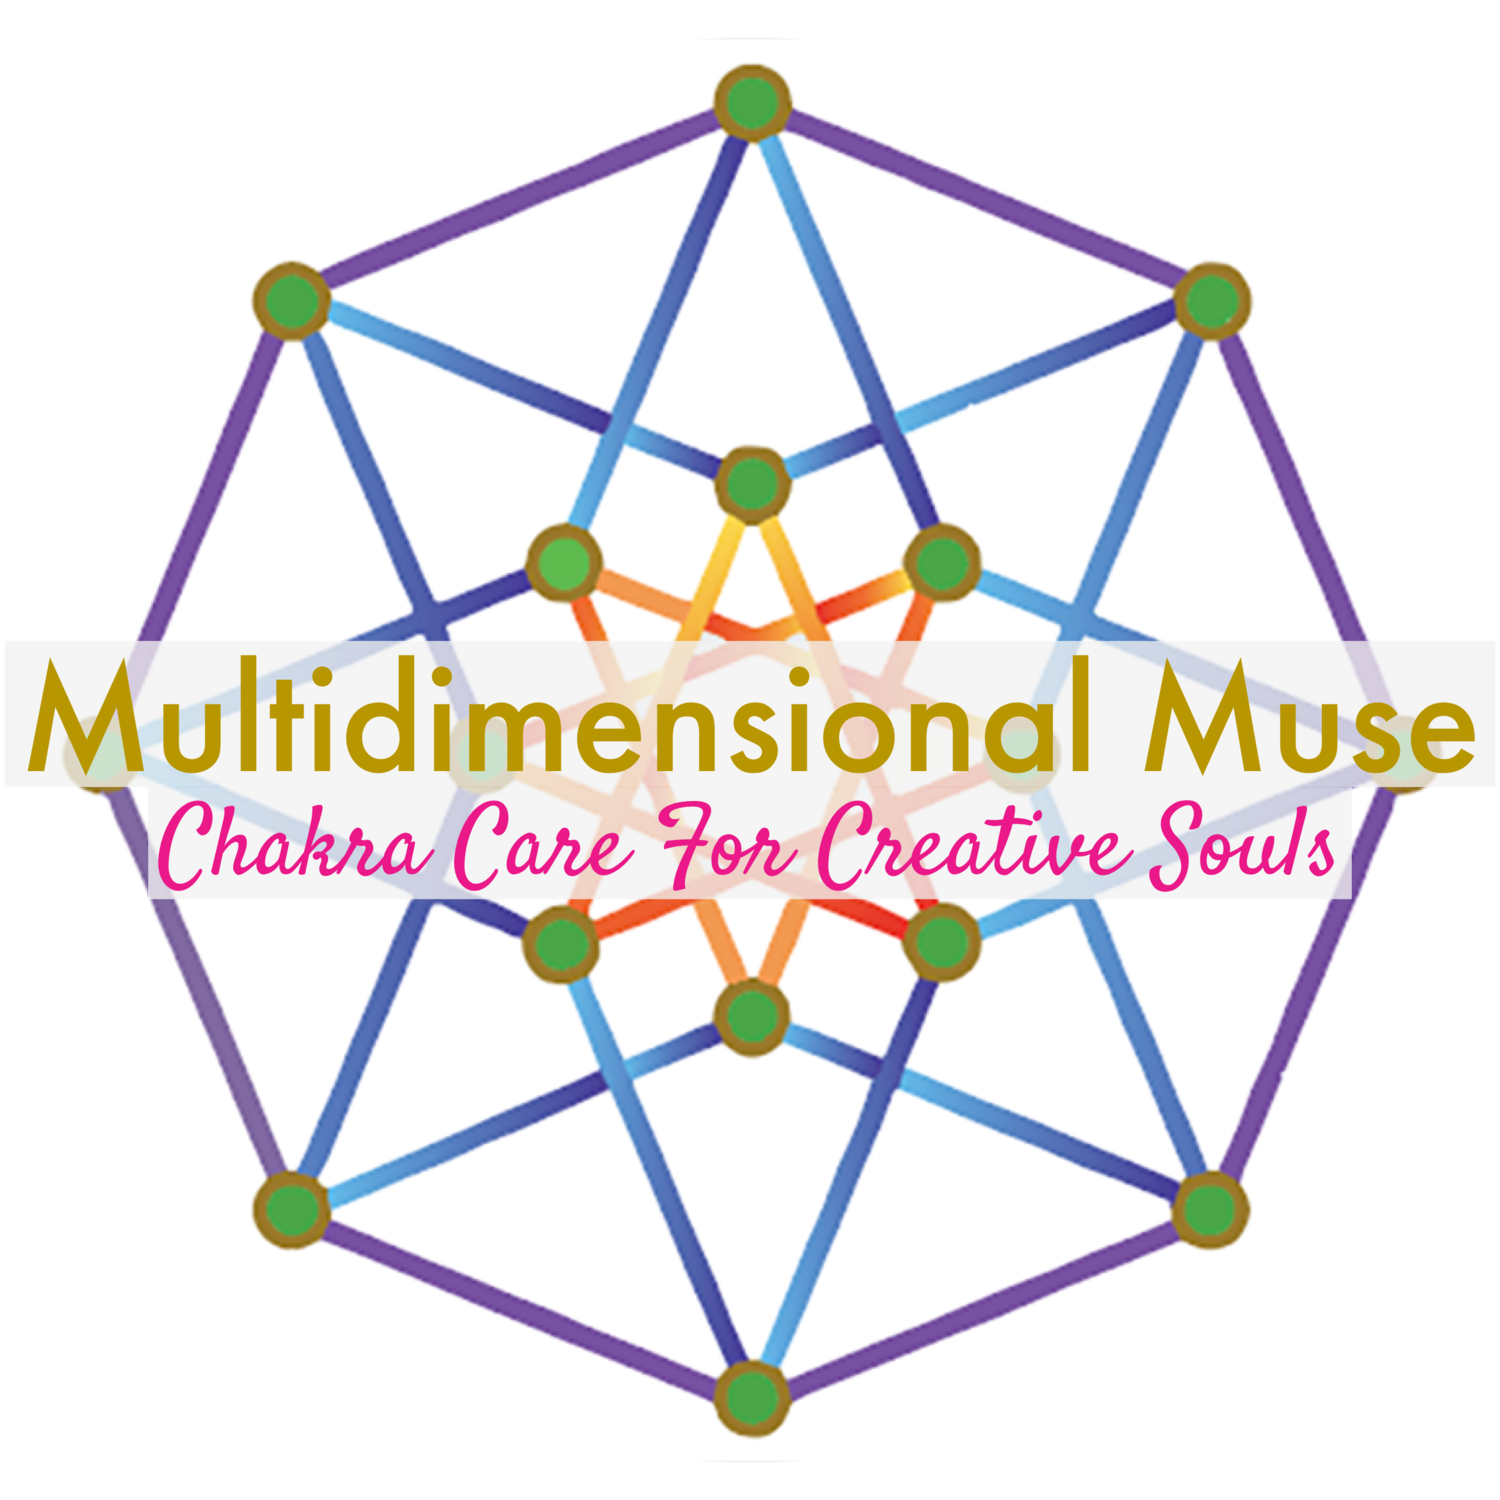 Multidimensional Muse